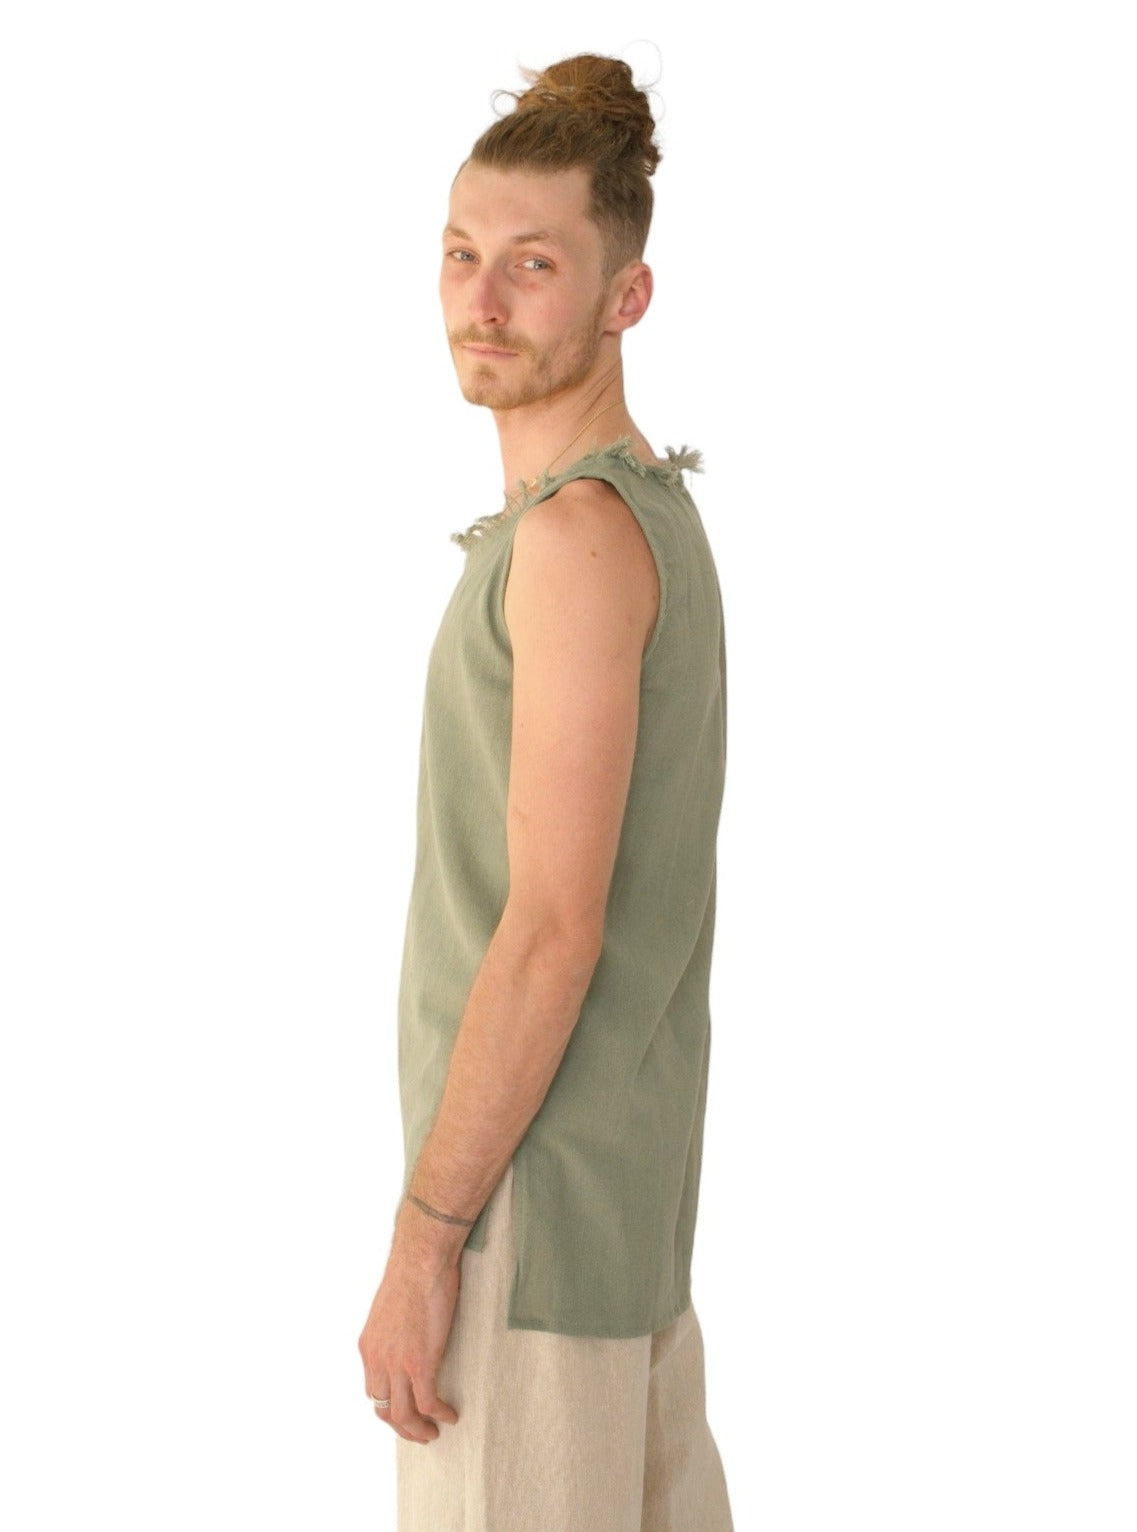 Men's Organic Cotton Sleeveless Shirt in Green Sage